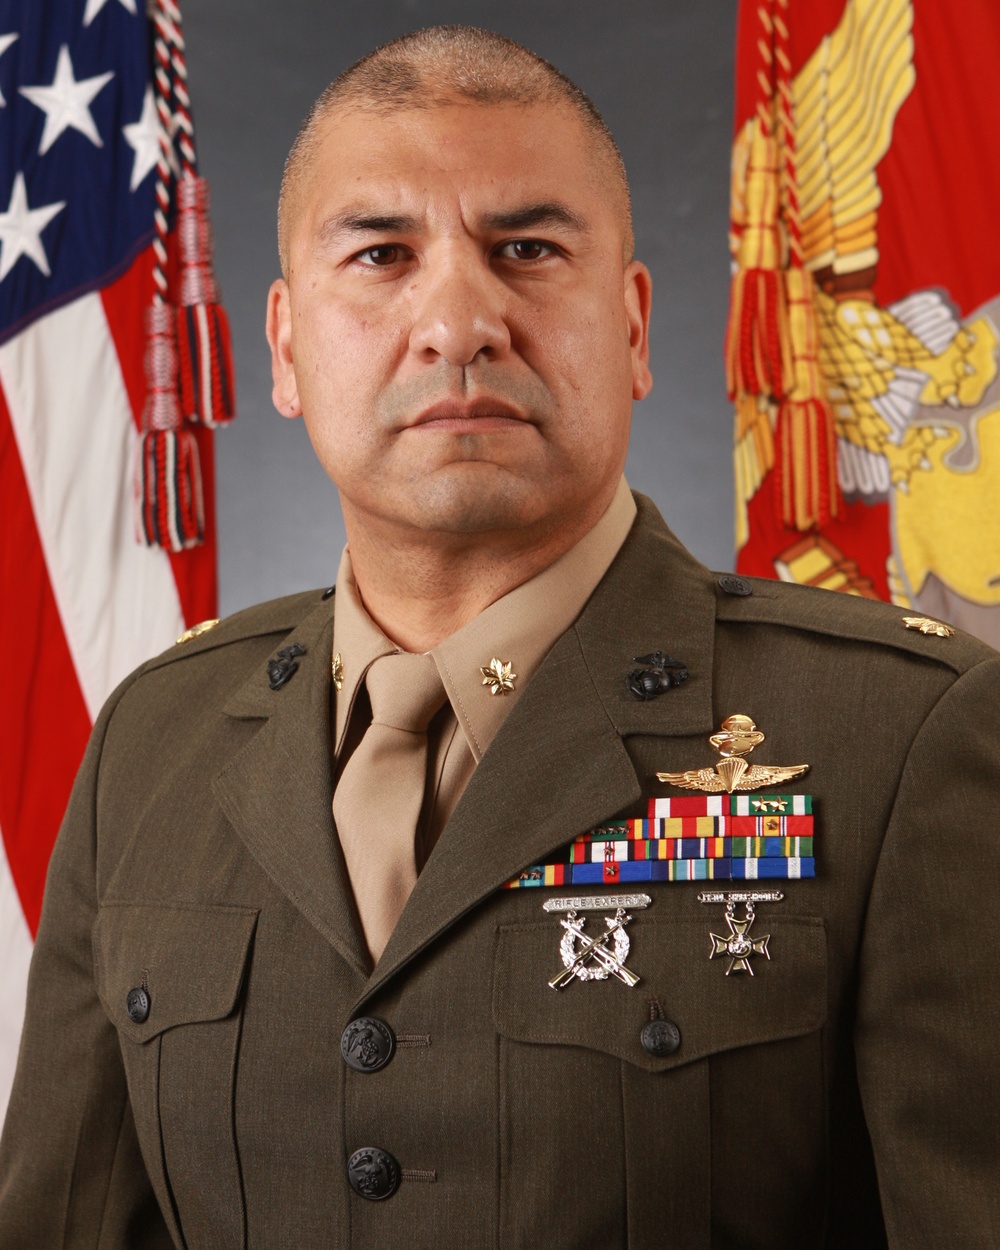 Gutierrez assumes command of Naval Aviation Training Center, Melchior bids farewell